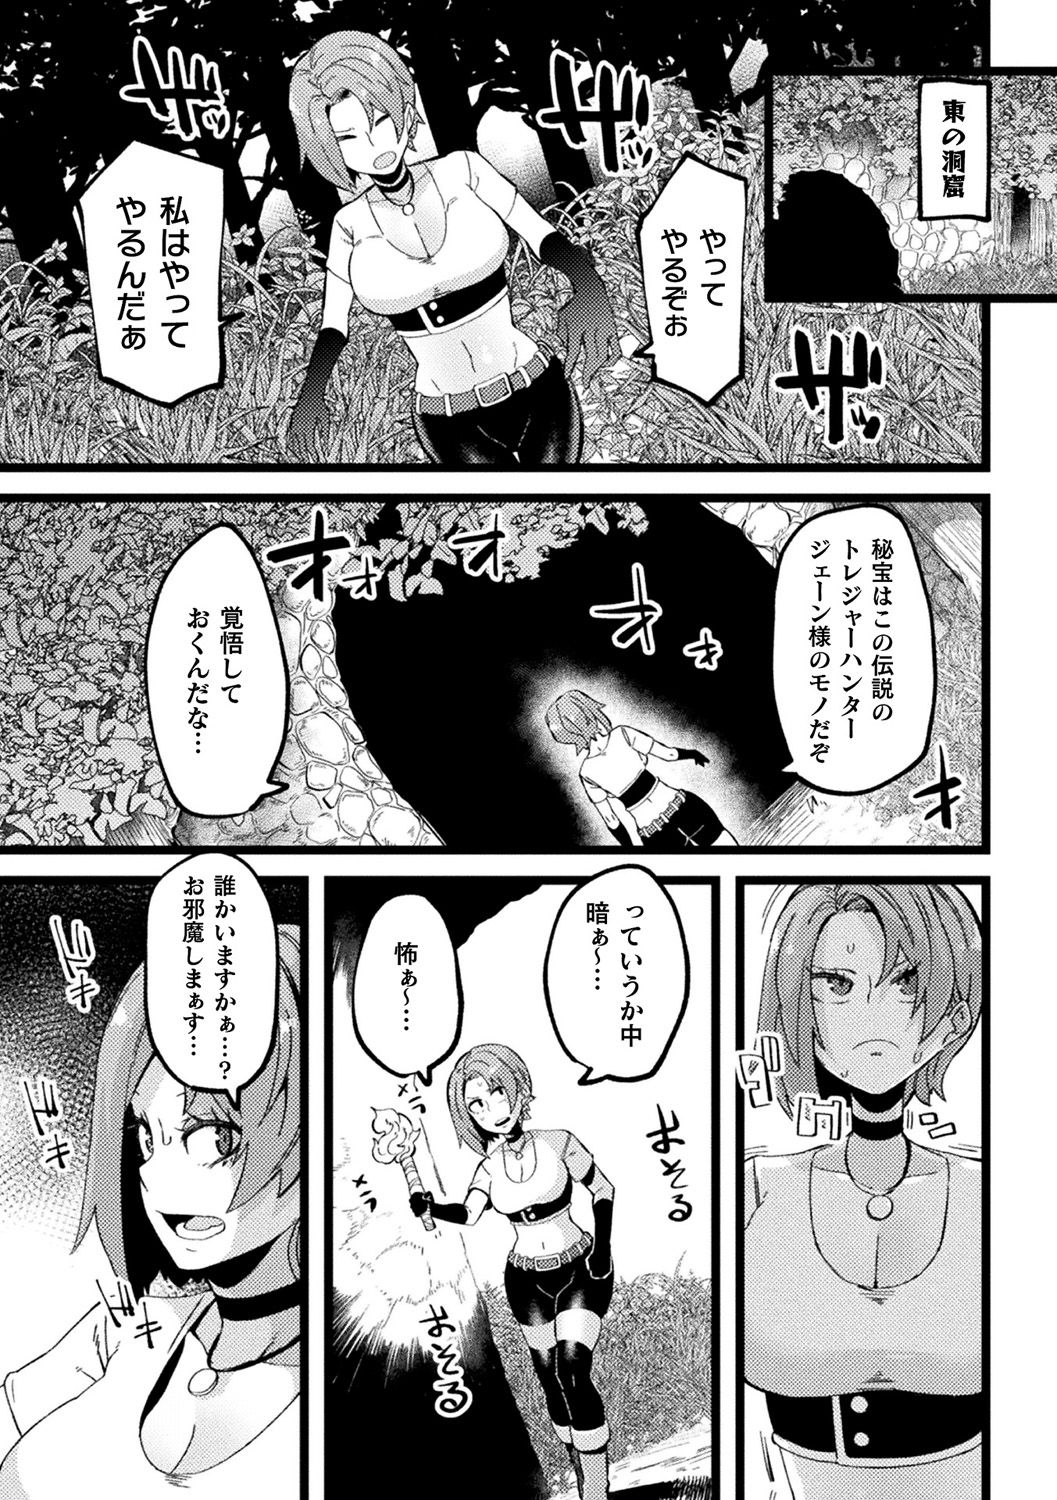 [Anthology] Bessatsu Comic Unreal Ponkotsu Fantasy Heroine H ~Doji o Funde Gyakuten Saretari Ero Trap ni Hamattari!?~ Vol. 2 [Digital] page 44 full